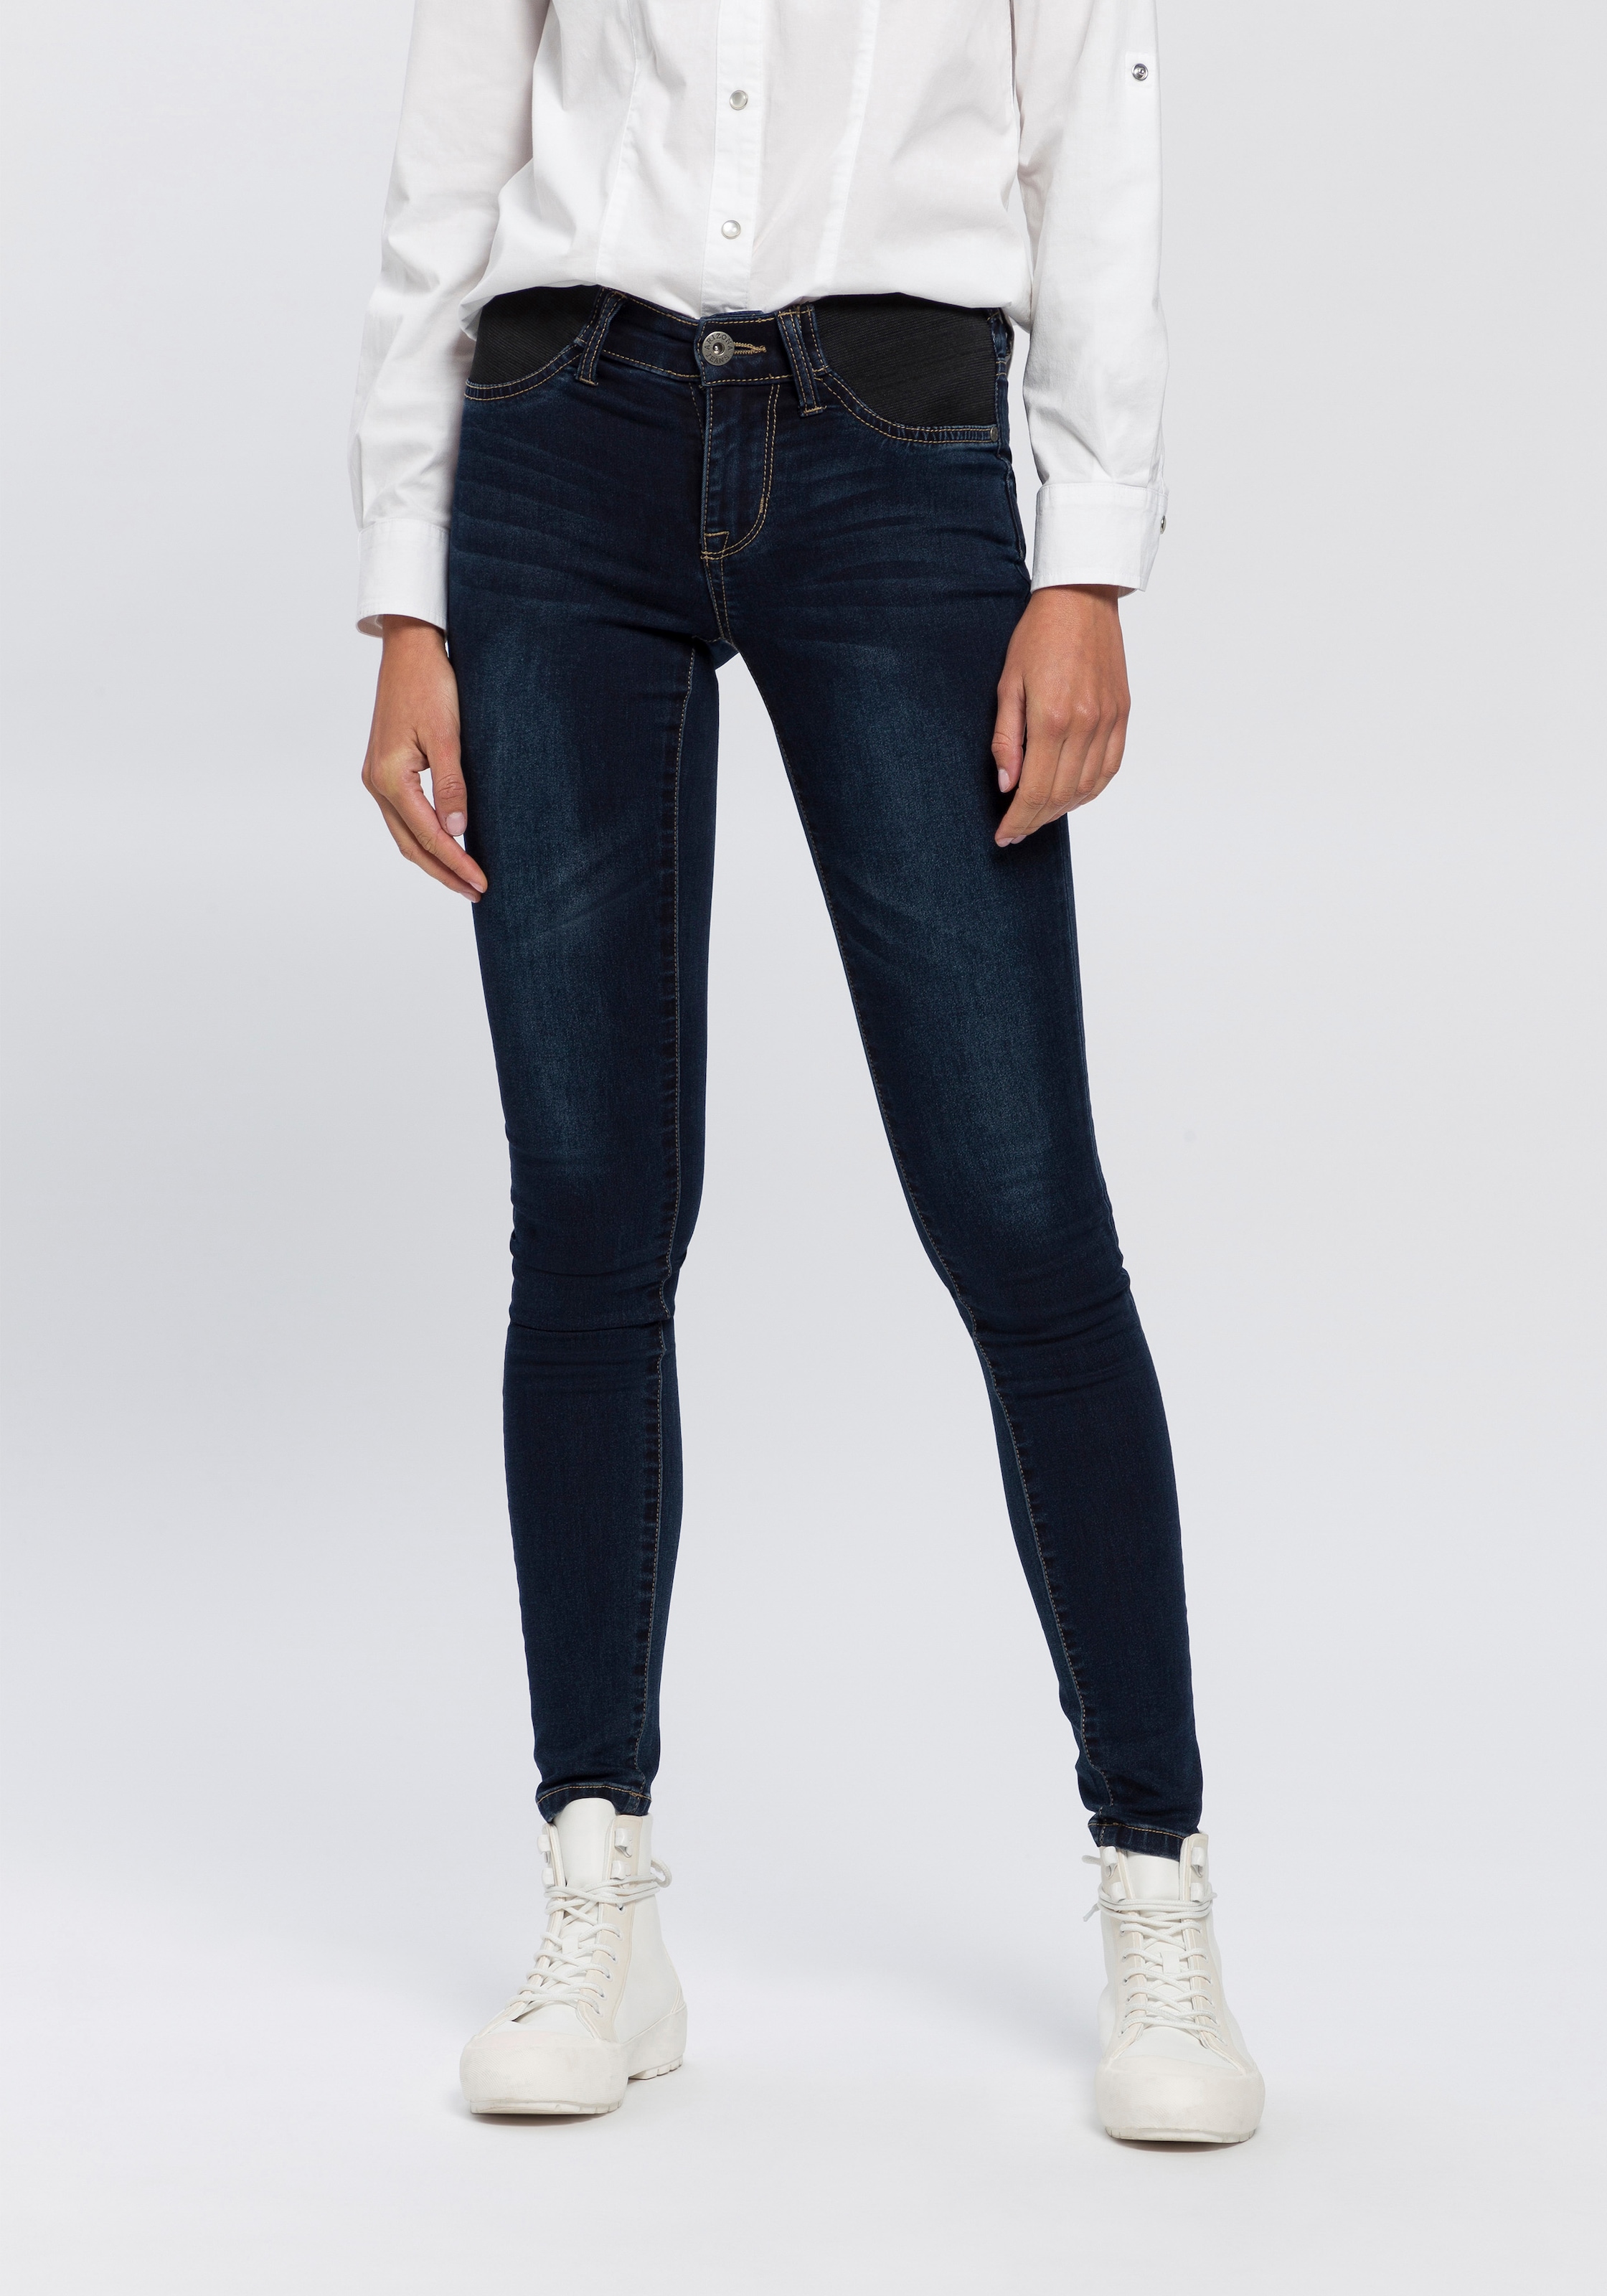 Jeans«, Weite Rise »Marlene ♕ High Waist 5-Pocket-Style High im Hochbund Premium Jeans bei ORANGE BOSS Denim